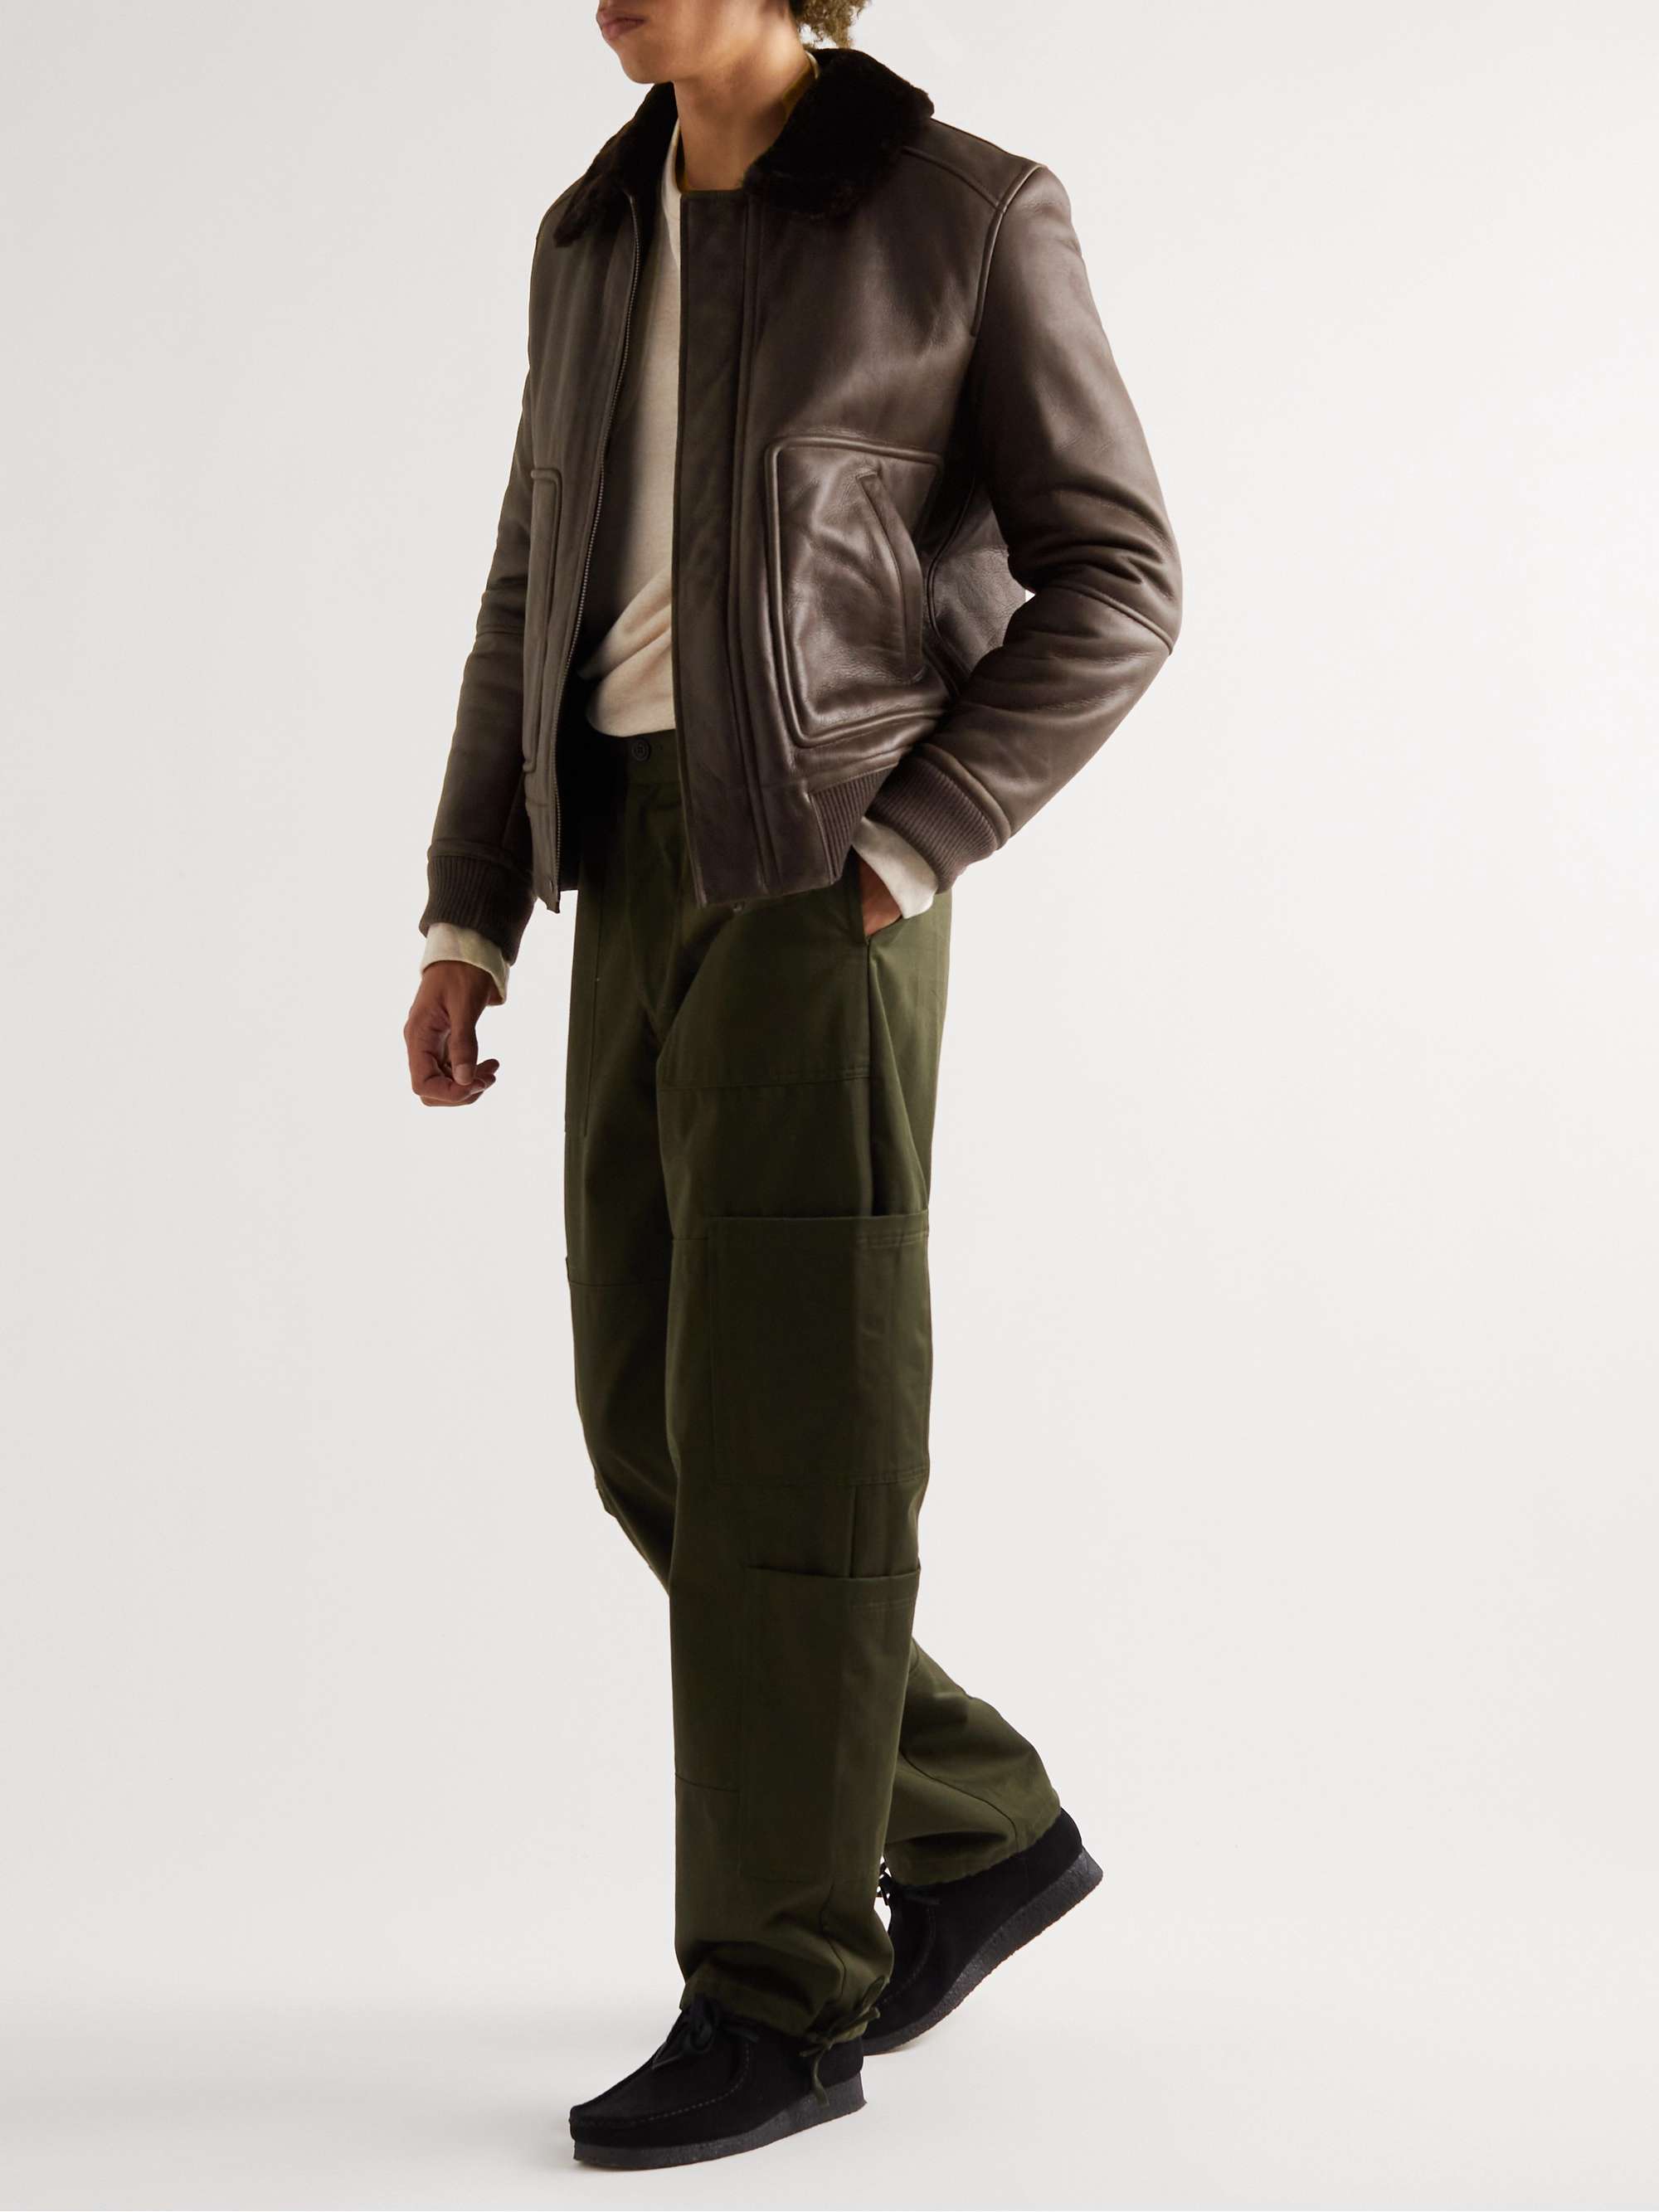 YVES SALOMON Shearling-Lined Leather Jacket for Men | MR PORTER